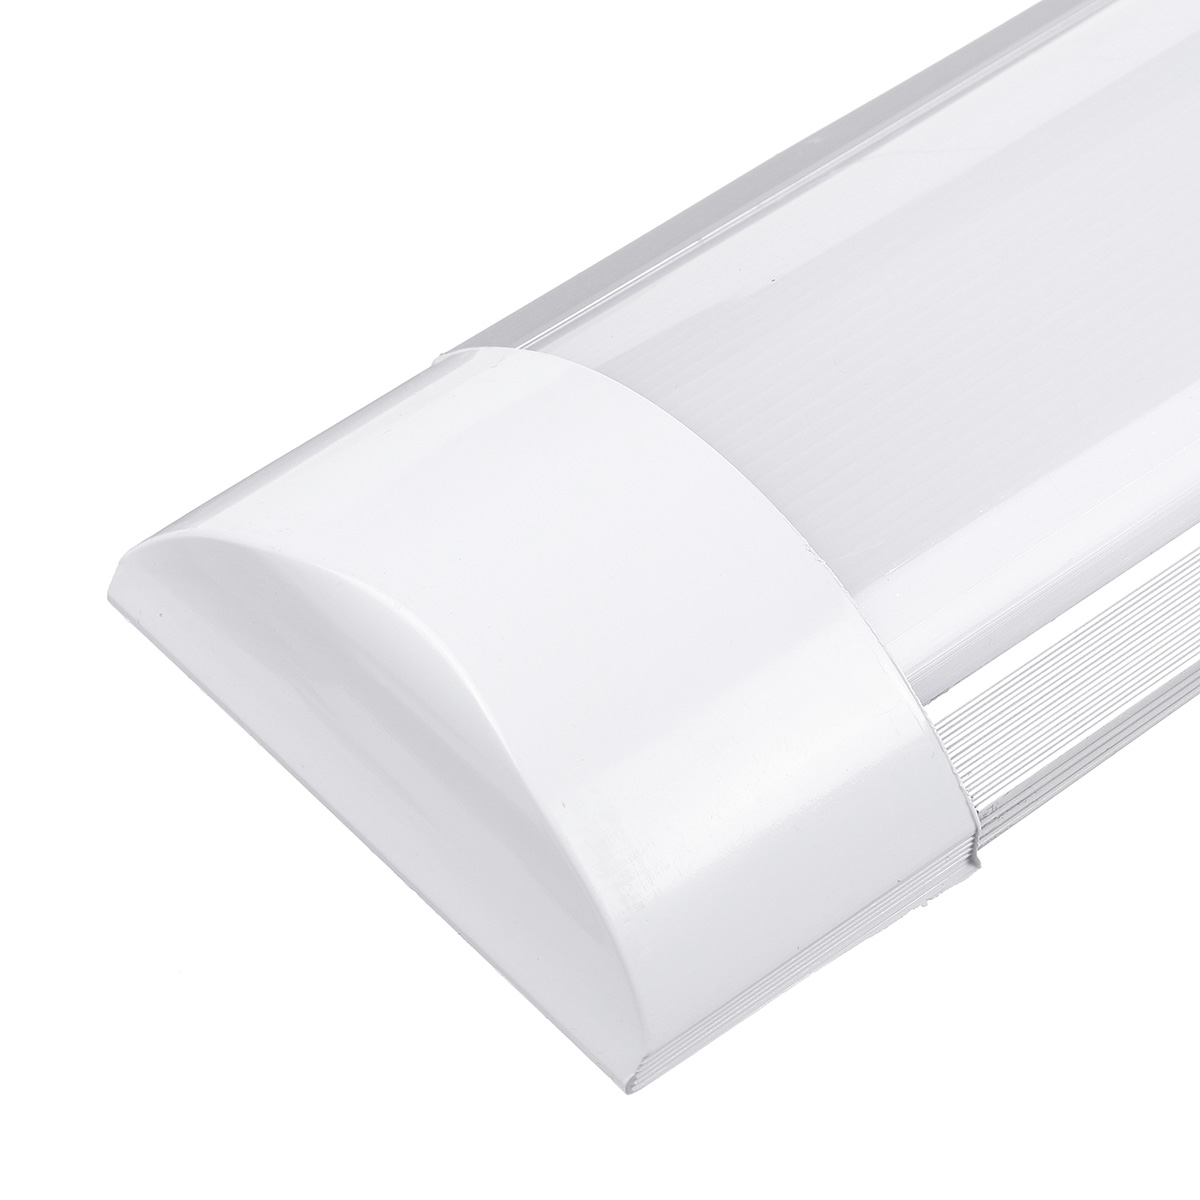 6Pcs-2FT-LED-Batten-Tube-Light-For-Garage-Workshop-Ceiling-Panel-Wall-Lamp-1730495-5